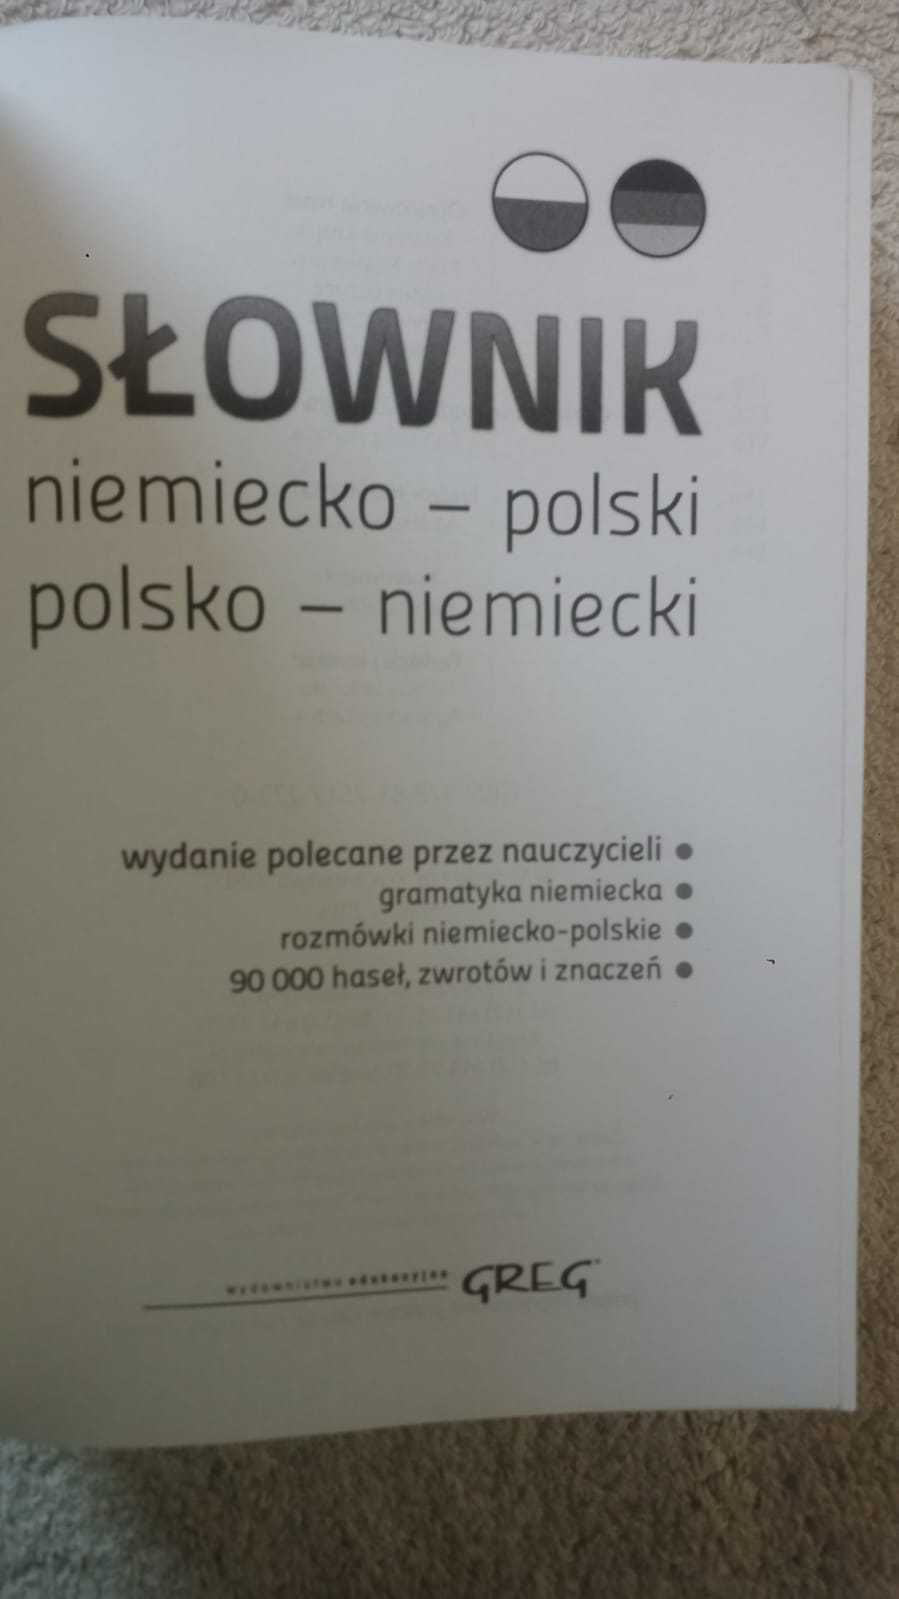 Słownik niemiecko-polski polsko-niemiecki 3w1 GREG